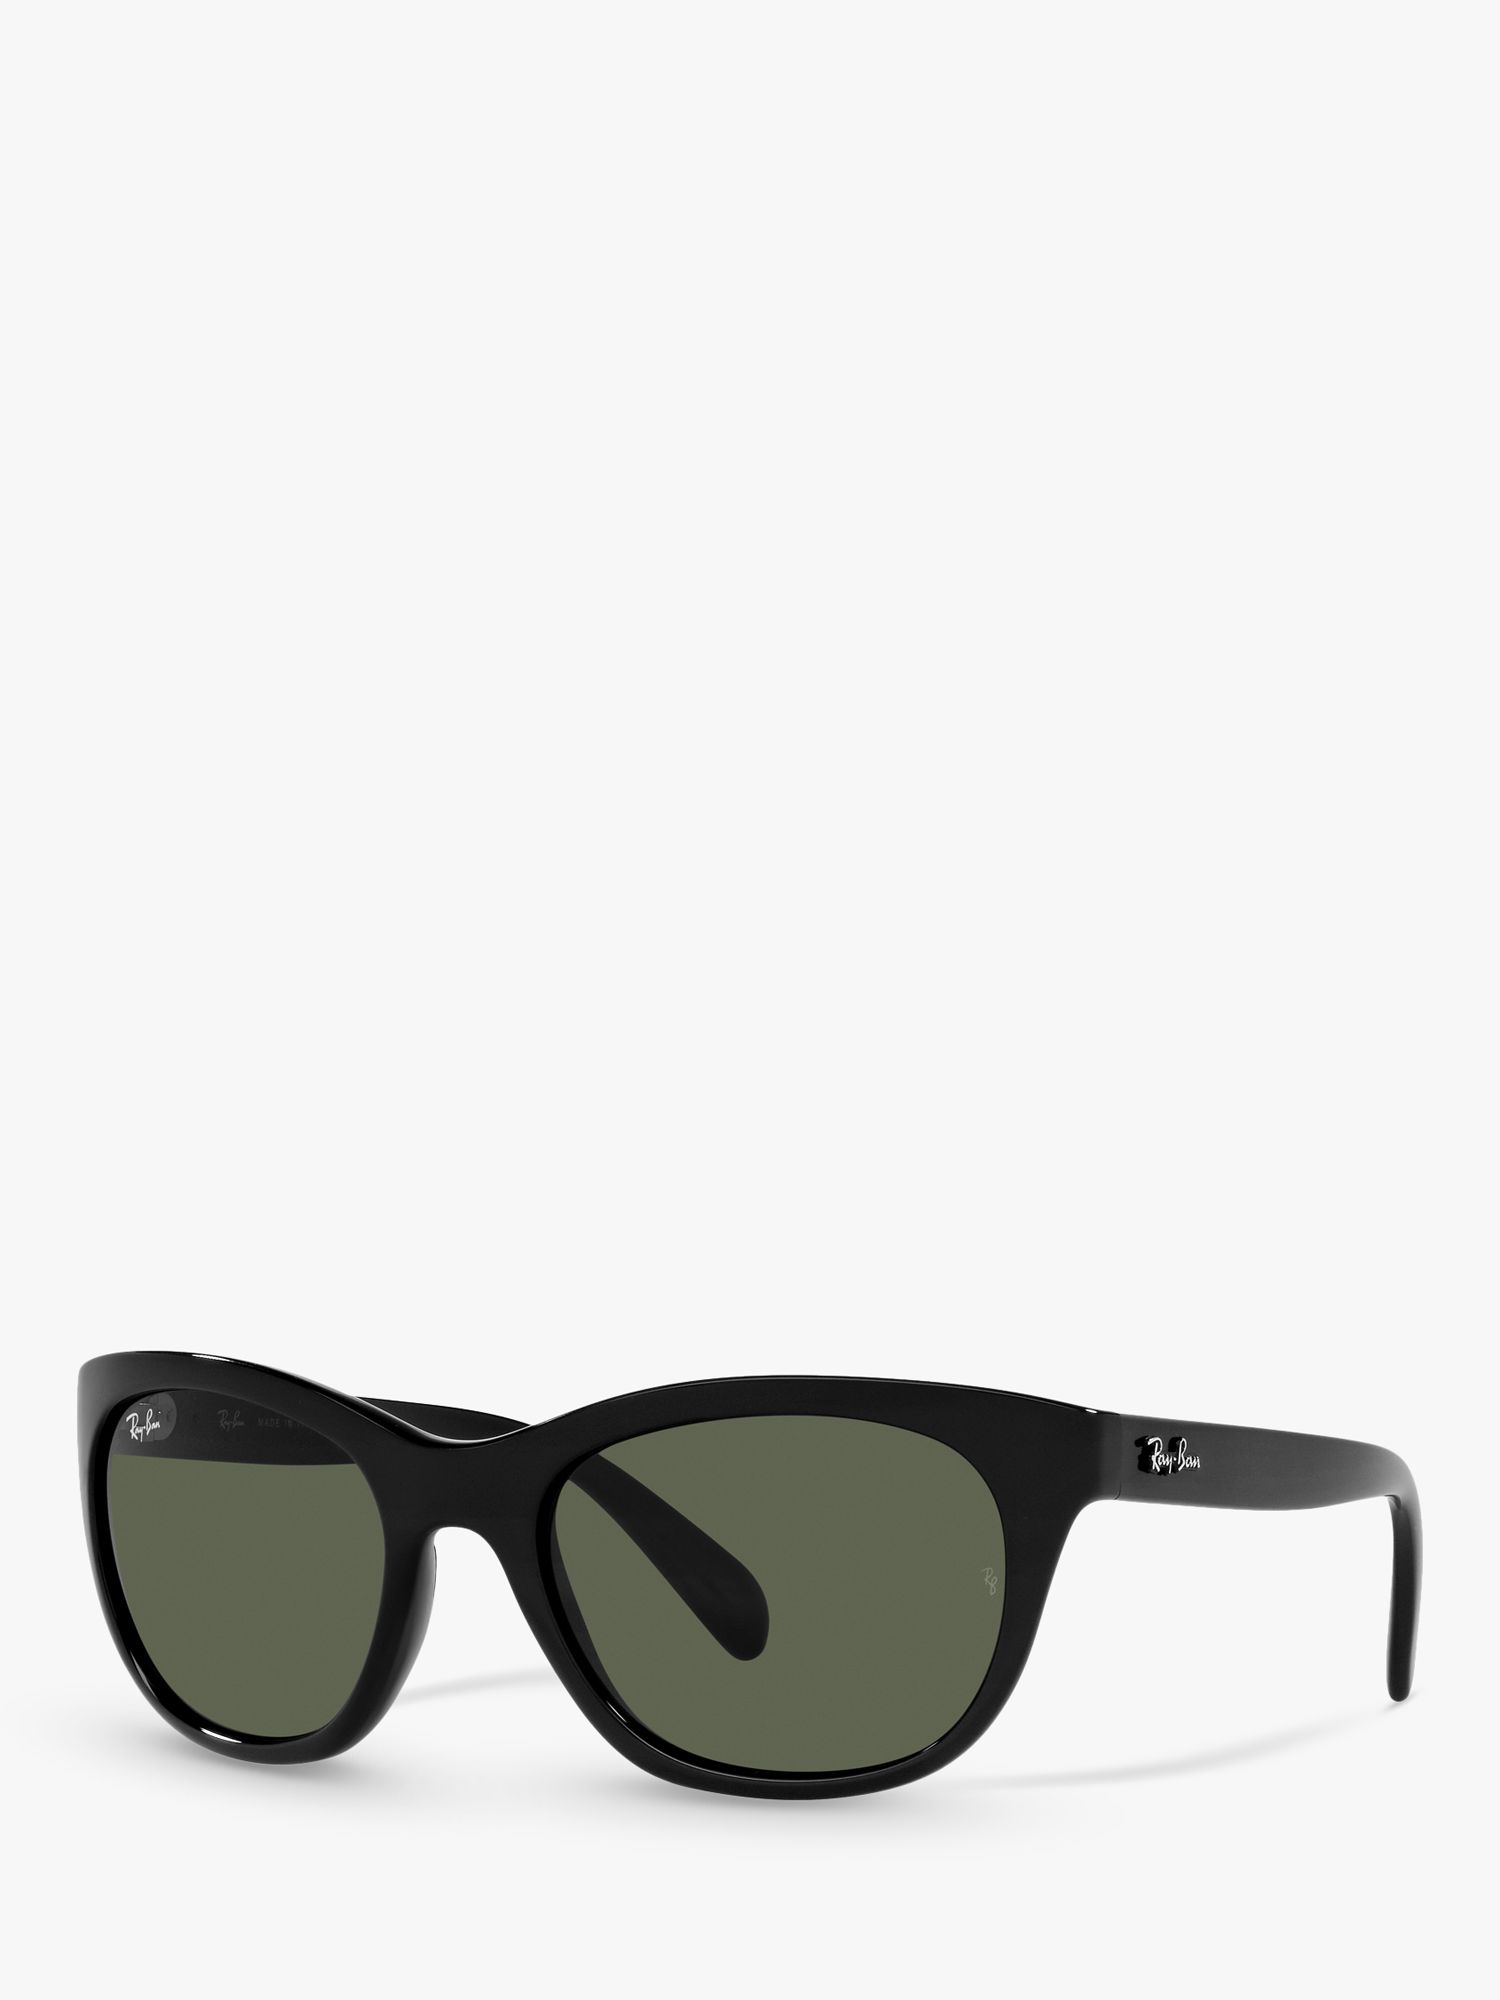 Женские квадратные солнцезащитные очки Ray-Ban RB4216, черные/зеленые